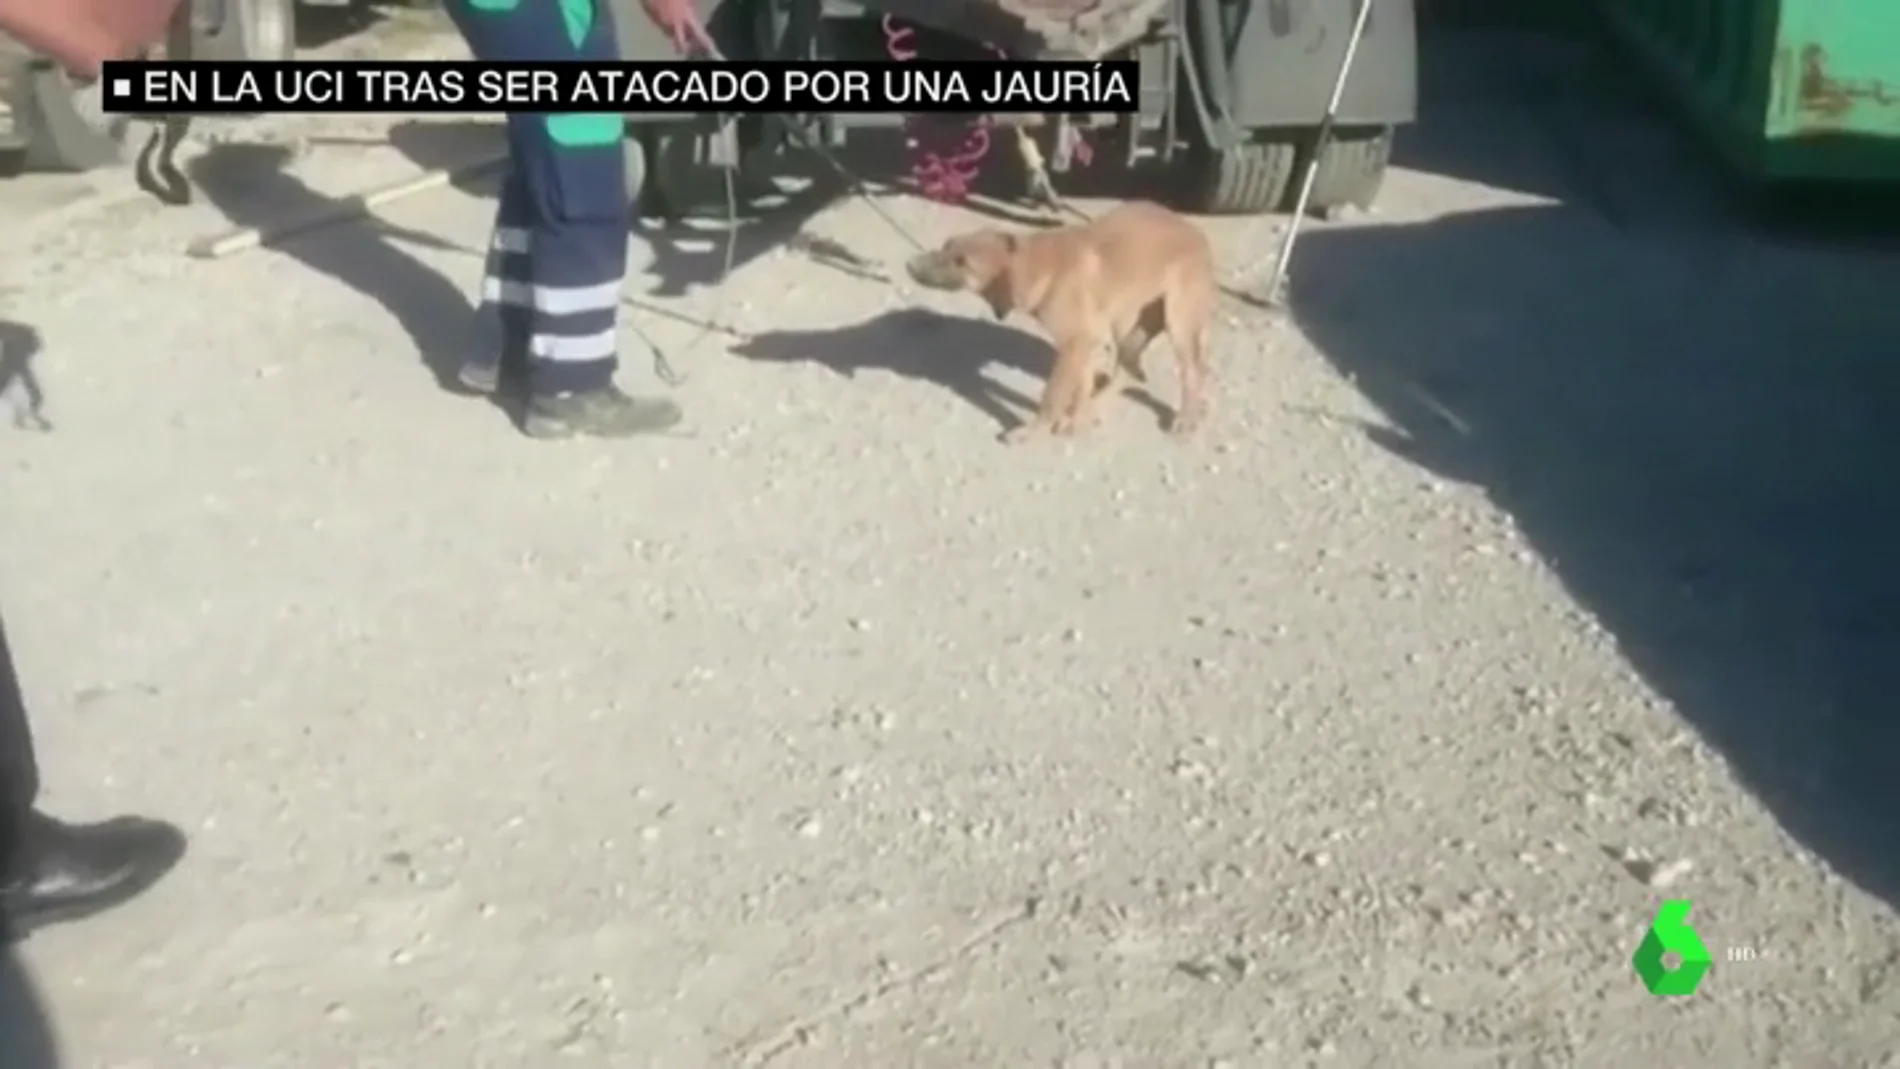 Un joven permanece en la UCI tras ser atacado por una jauría de perros en Málaga